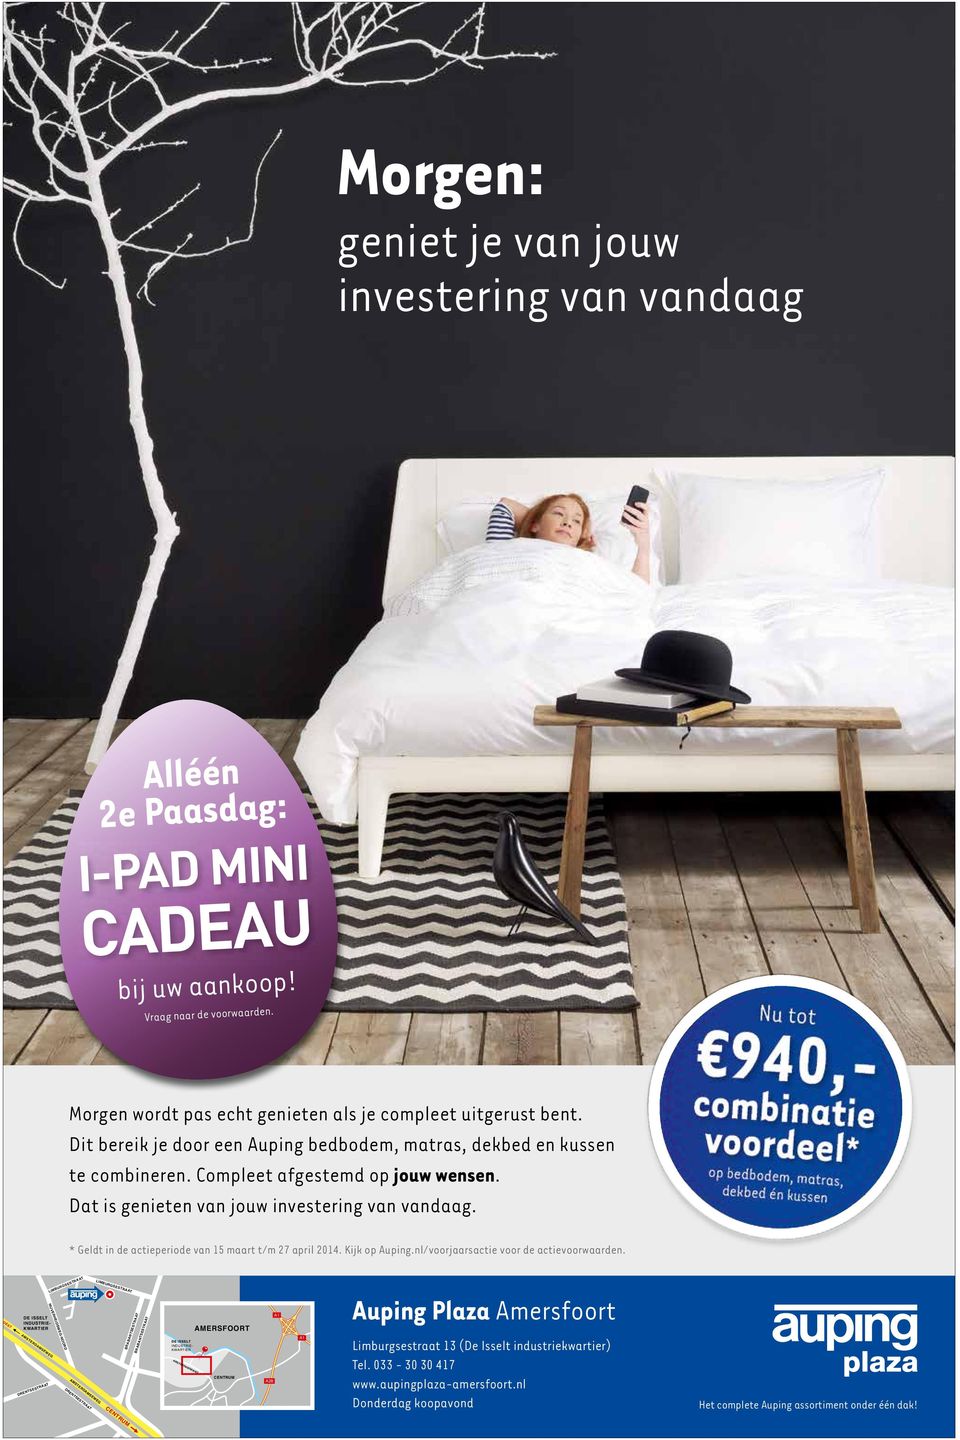 combinatie voordeel* op bedbodem, matras, dekbed én kussen * Geldt in de actieperiode van 15 maart t/m 27 april 2014. Kijk op Auping.nl/voorjaarsactie voor de actievoorwaarden.